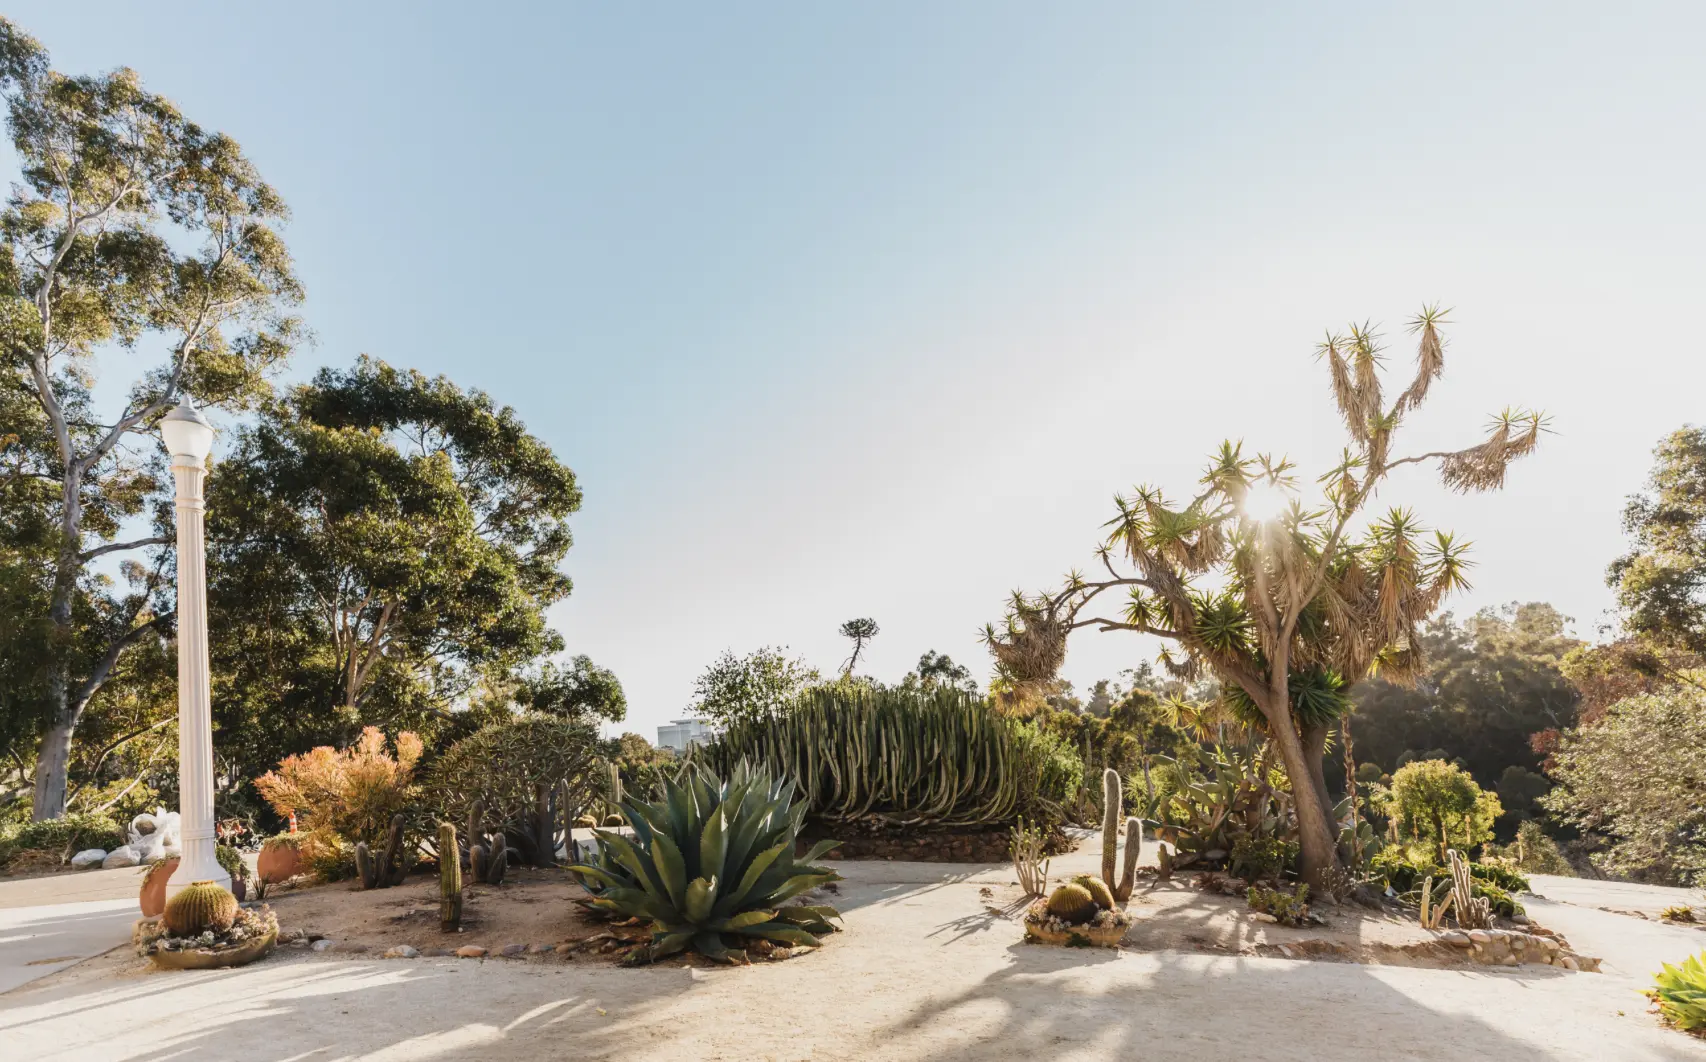 Cacti and other desert vegetation in Balboa Park.